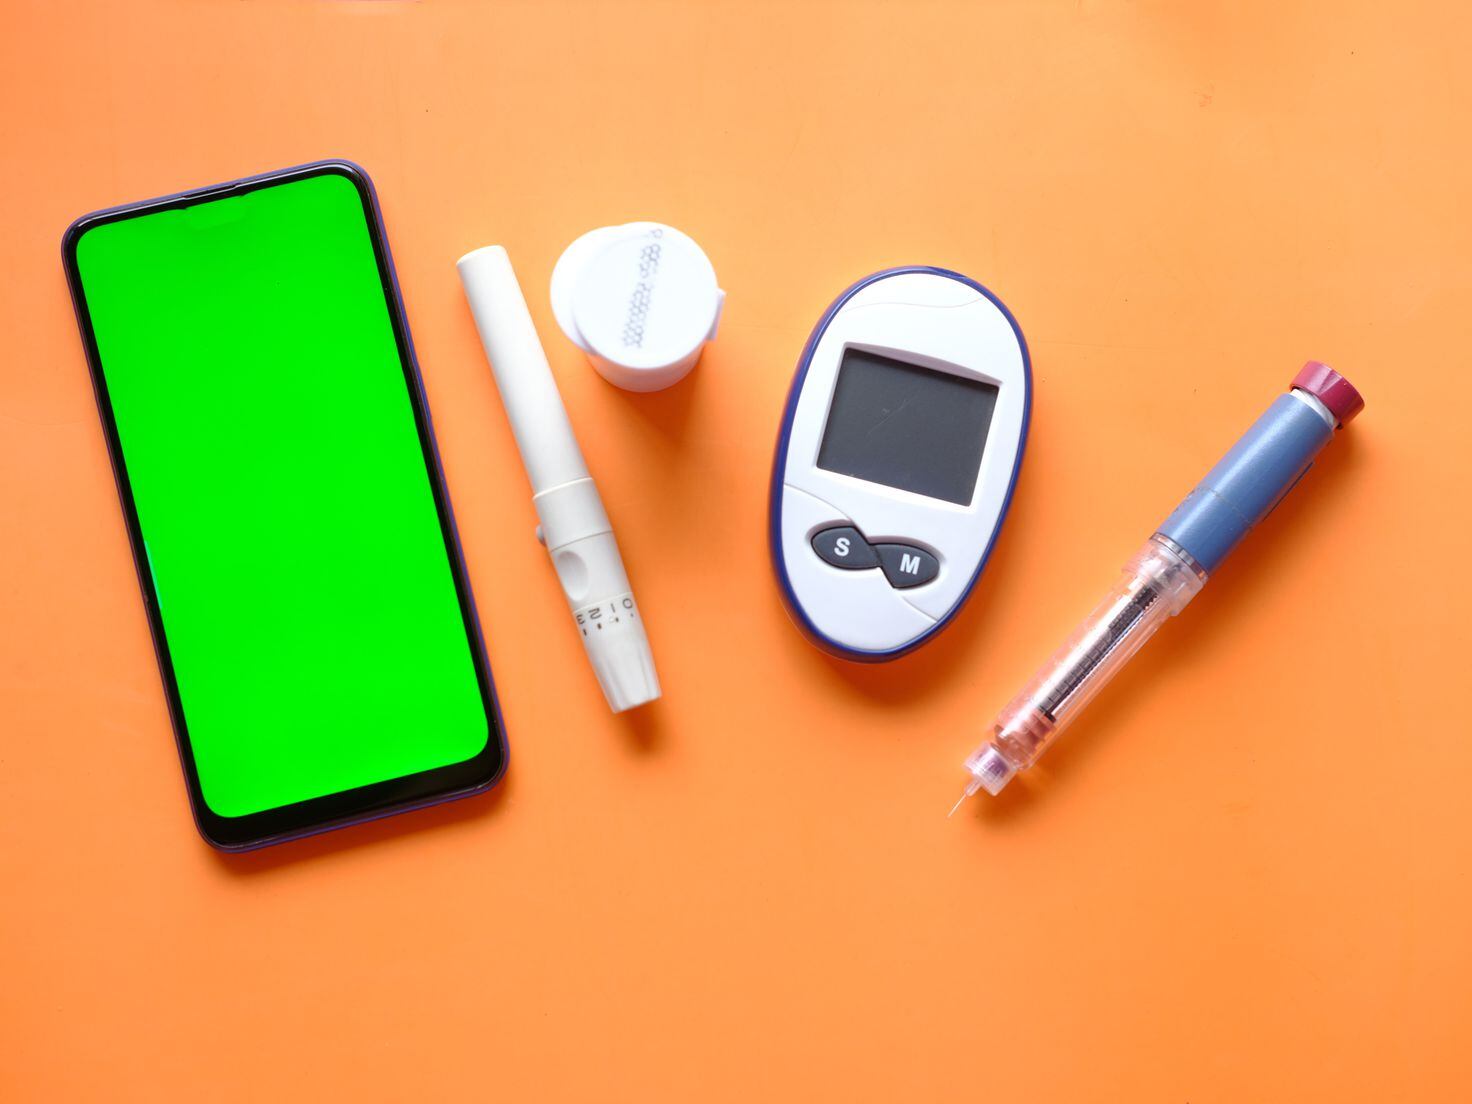 Ozempic, el medicamento de la diabetes que sirve para adelgazar y se agota  en España: efectos secundarios 